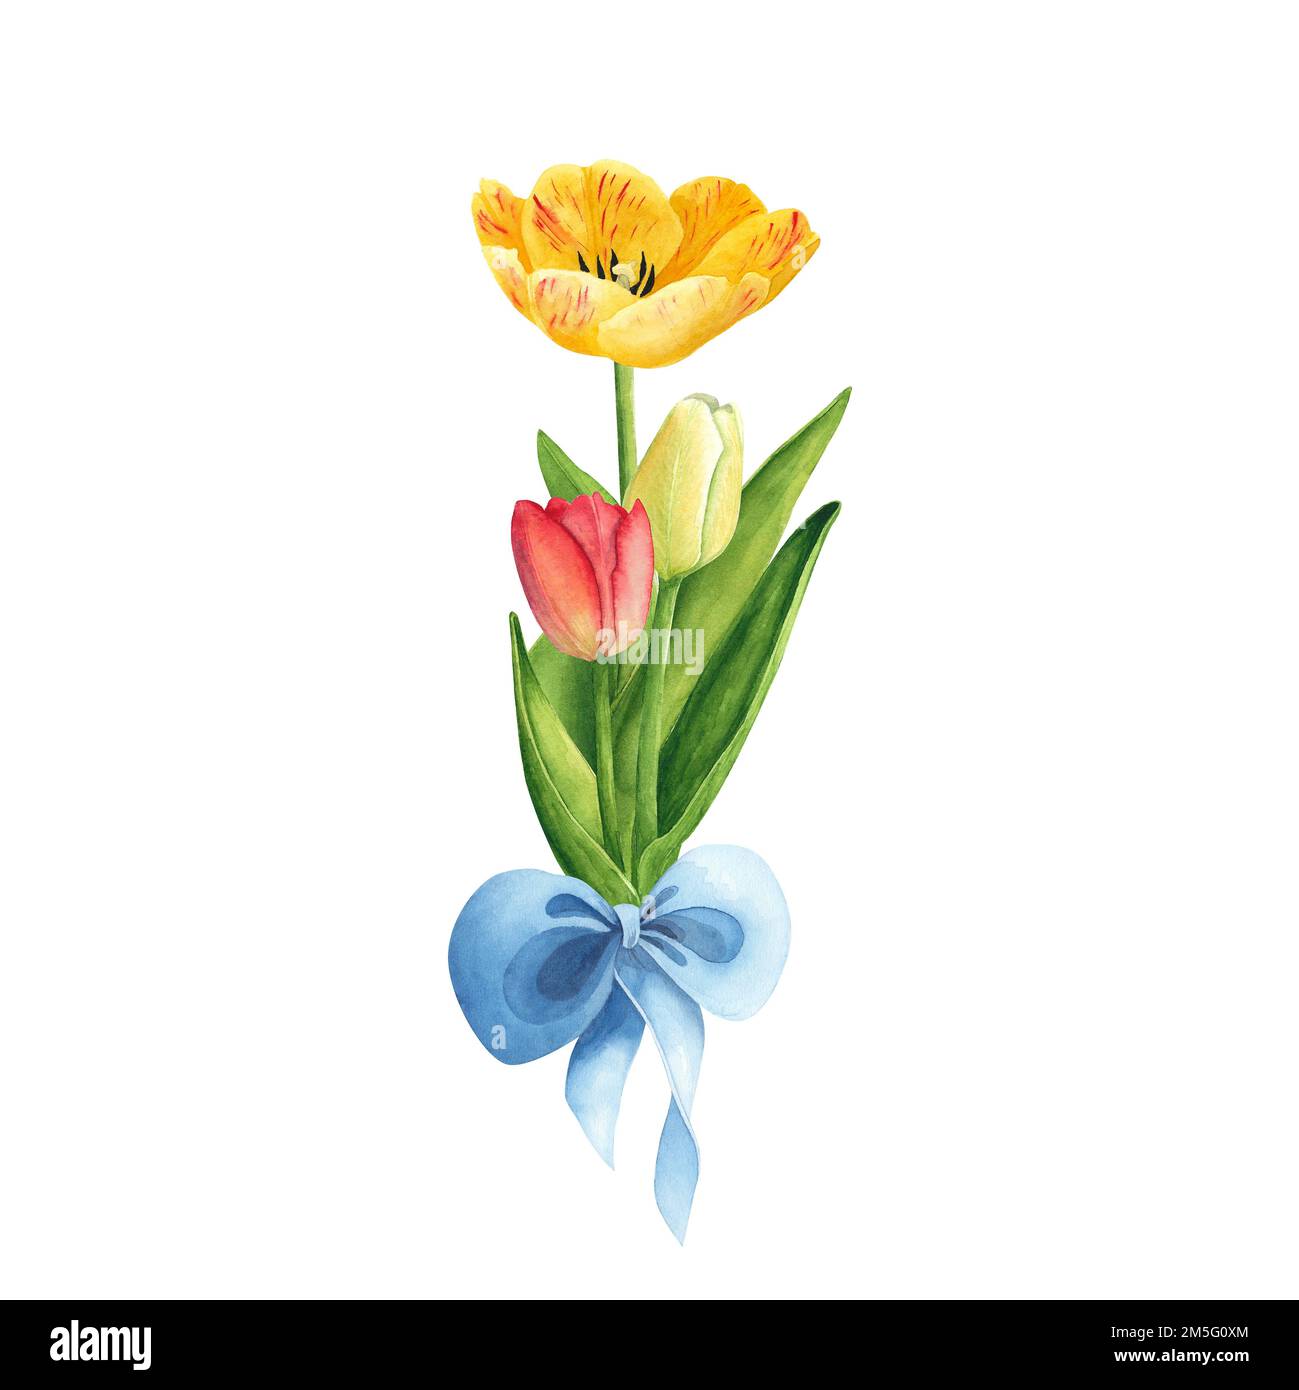 Tulpen in gelben und roten Farben mit blauer Schleife auf weißem Hintergrund. Aquarell-Handzeichnung. Kunst zur Dekoration und Gestaltung von Druckerzeugnissen Stockfoto